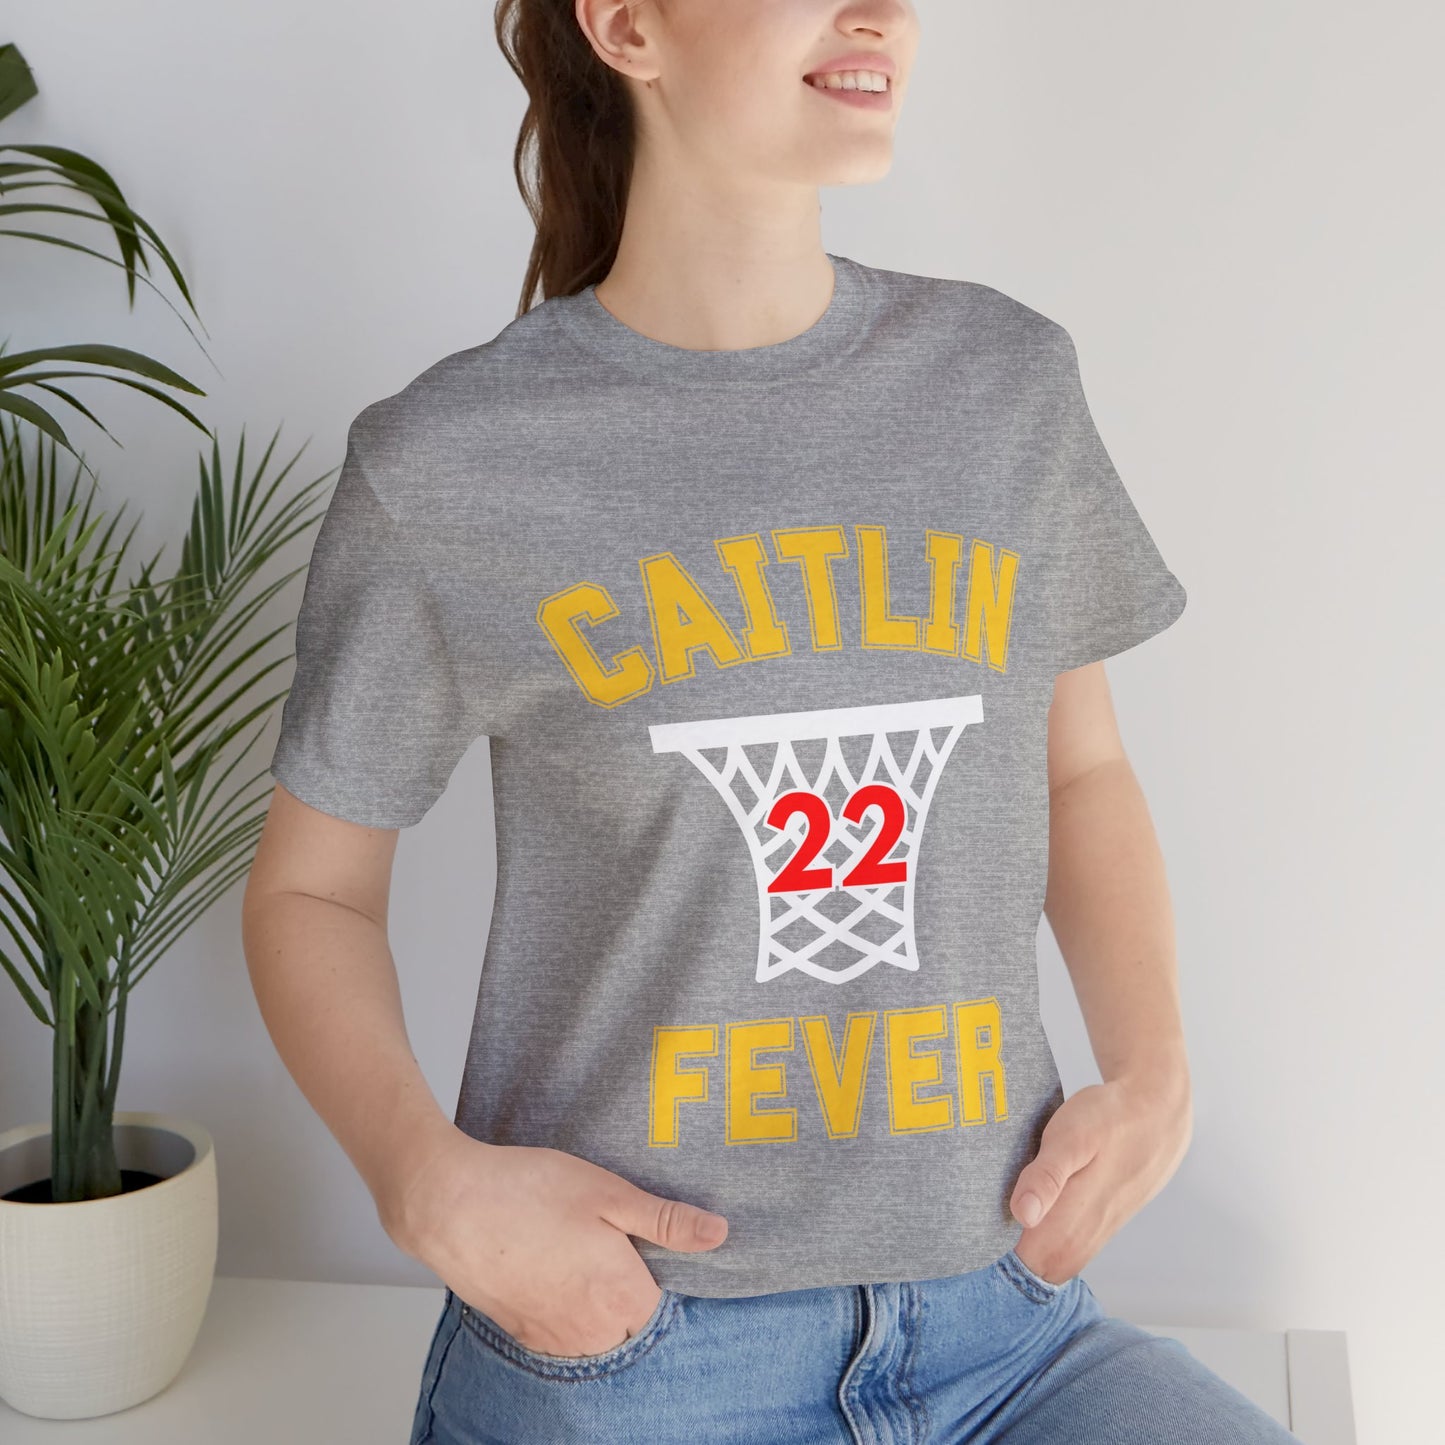 Caitlin Fever Adult Tee